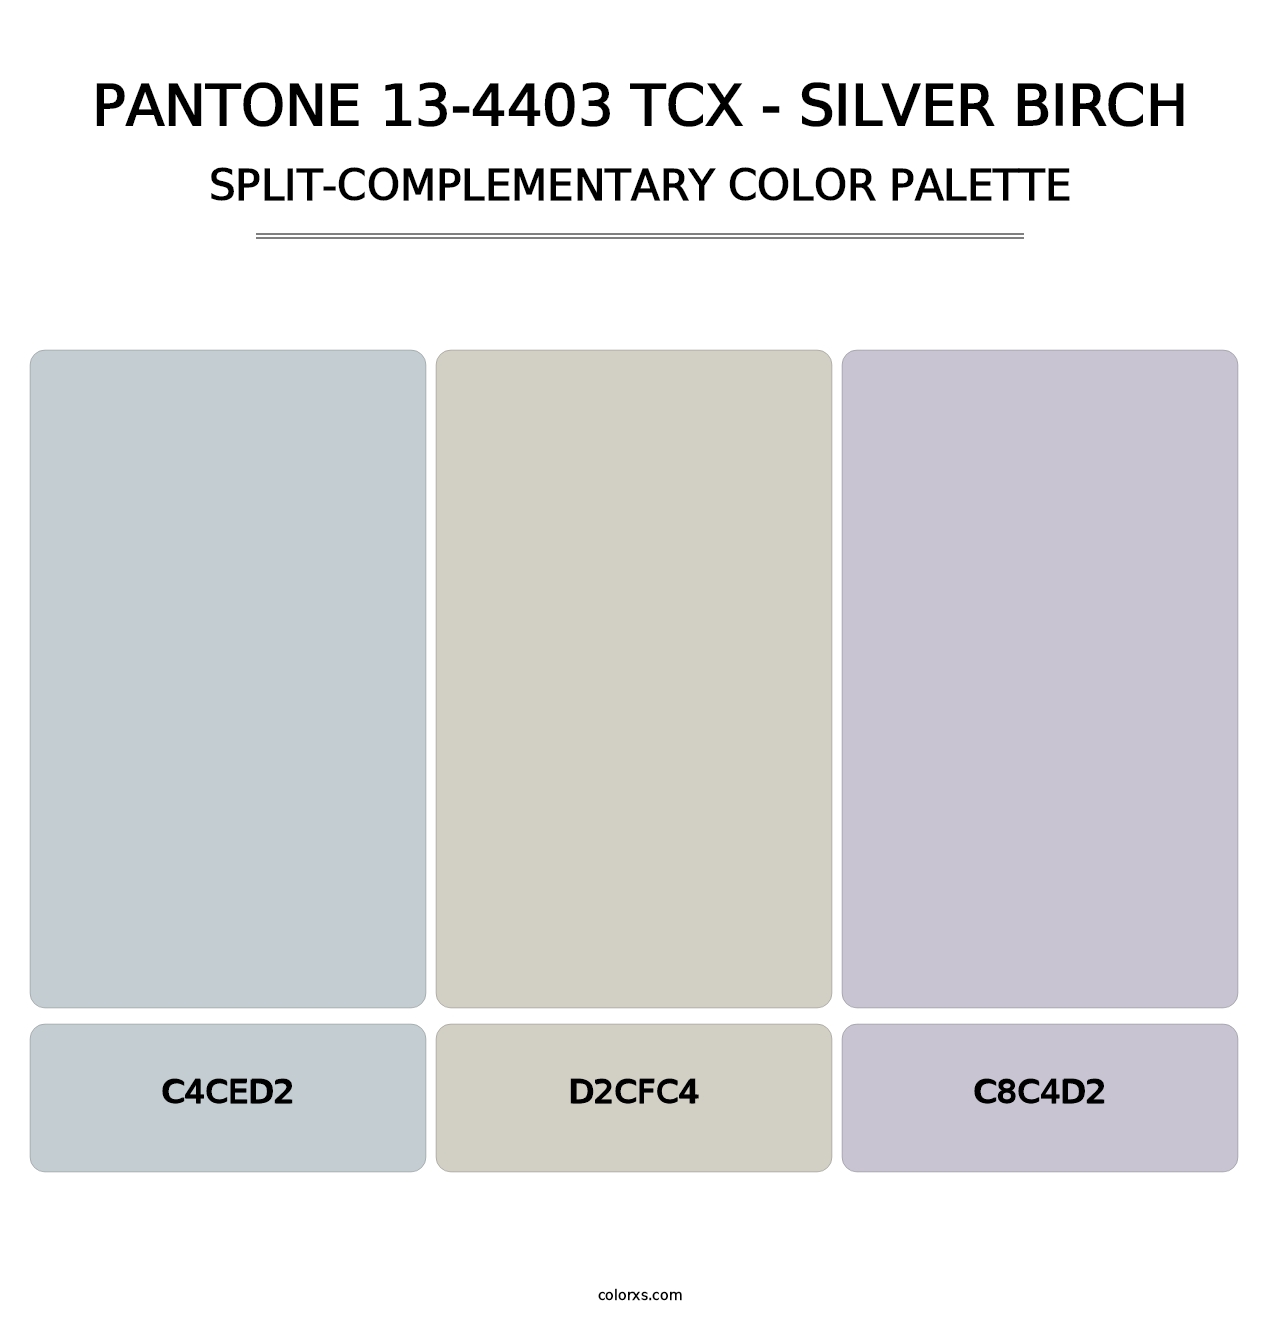 PANTONE 13-4403 TCX - Silver Birch - Split-Complementary Color Palette